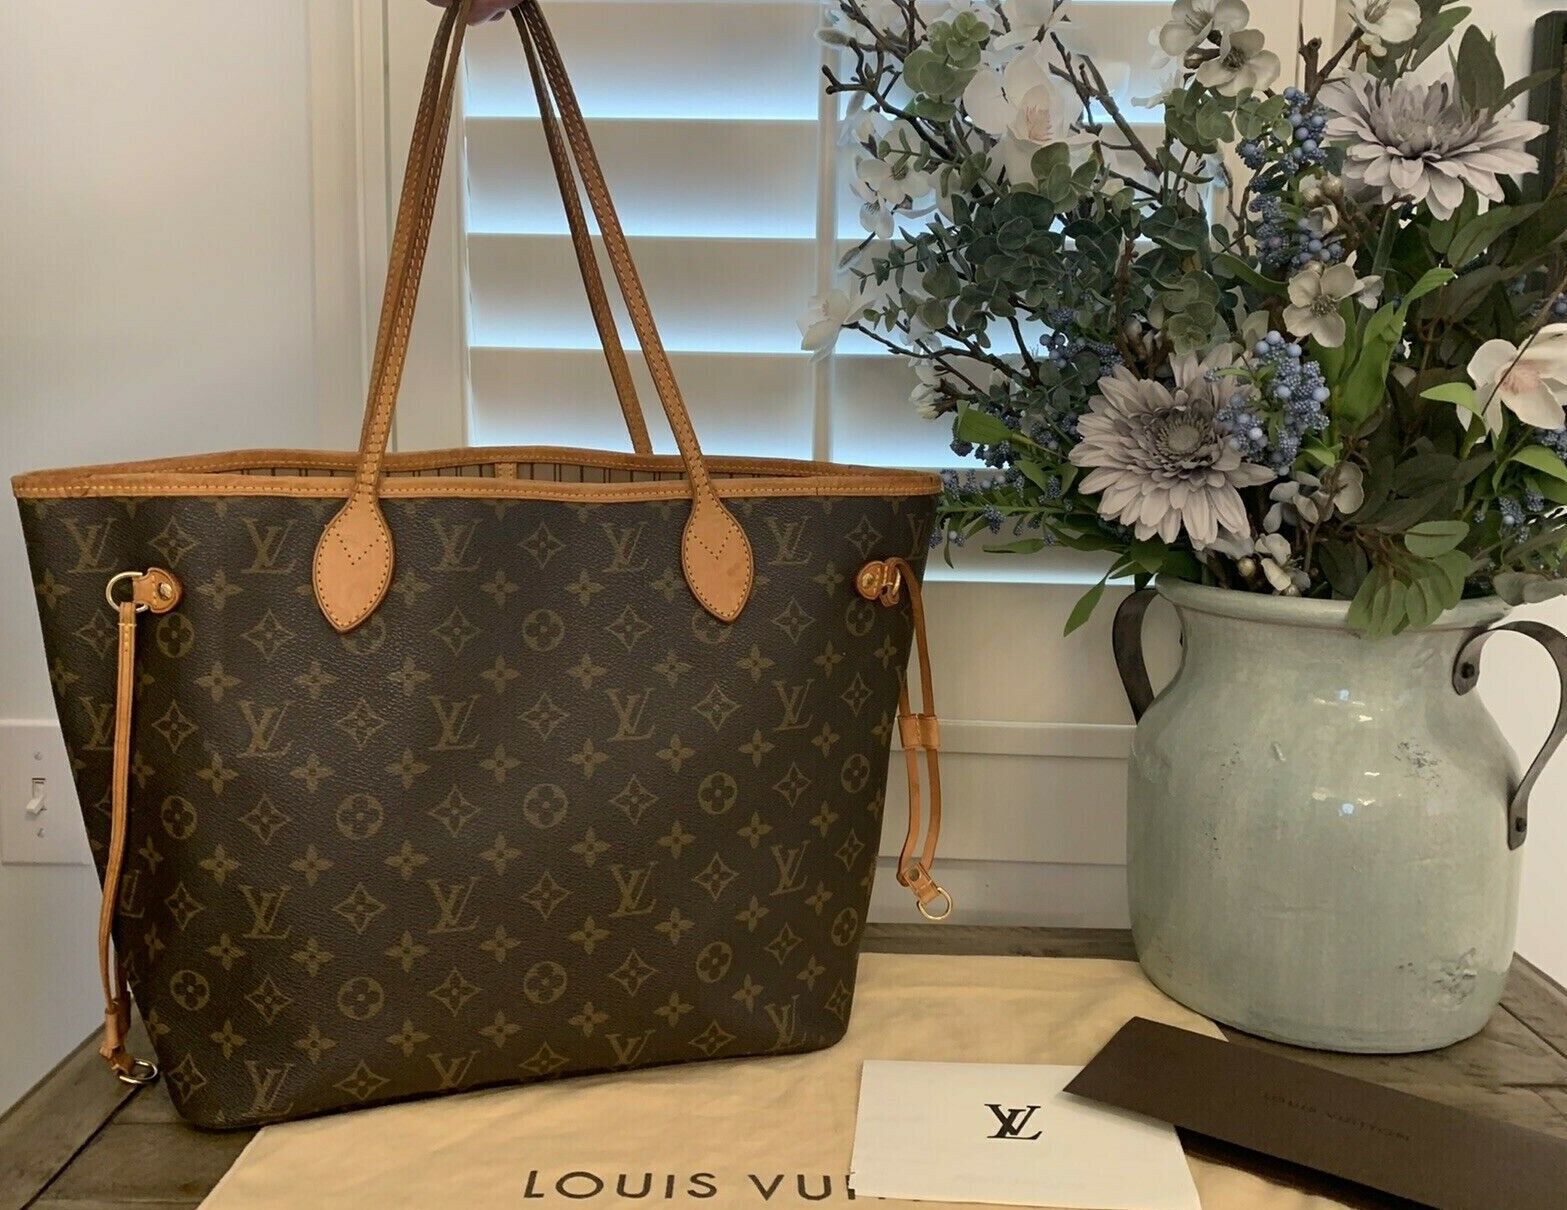 100% Authentic Louis Vuitton Monogram MM Tote Handbag (M40156) for Sale - Fleetwoodmac.net